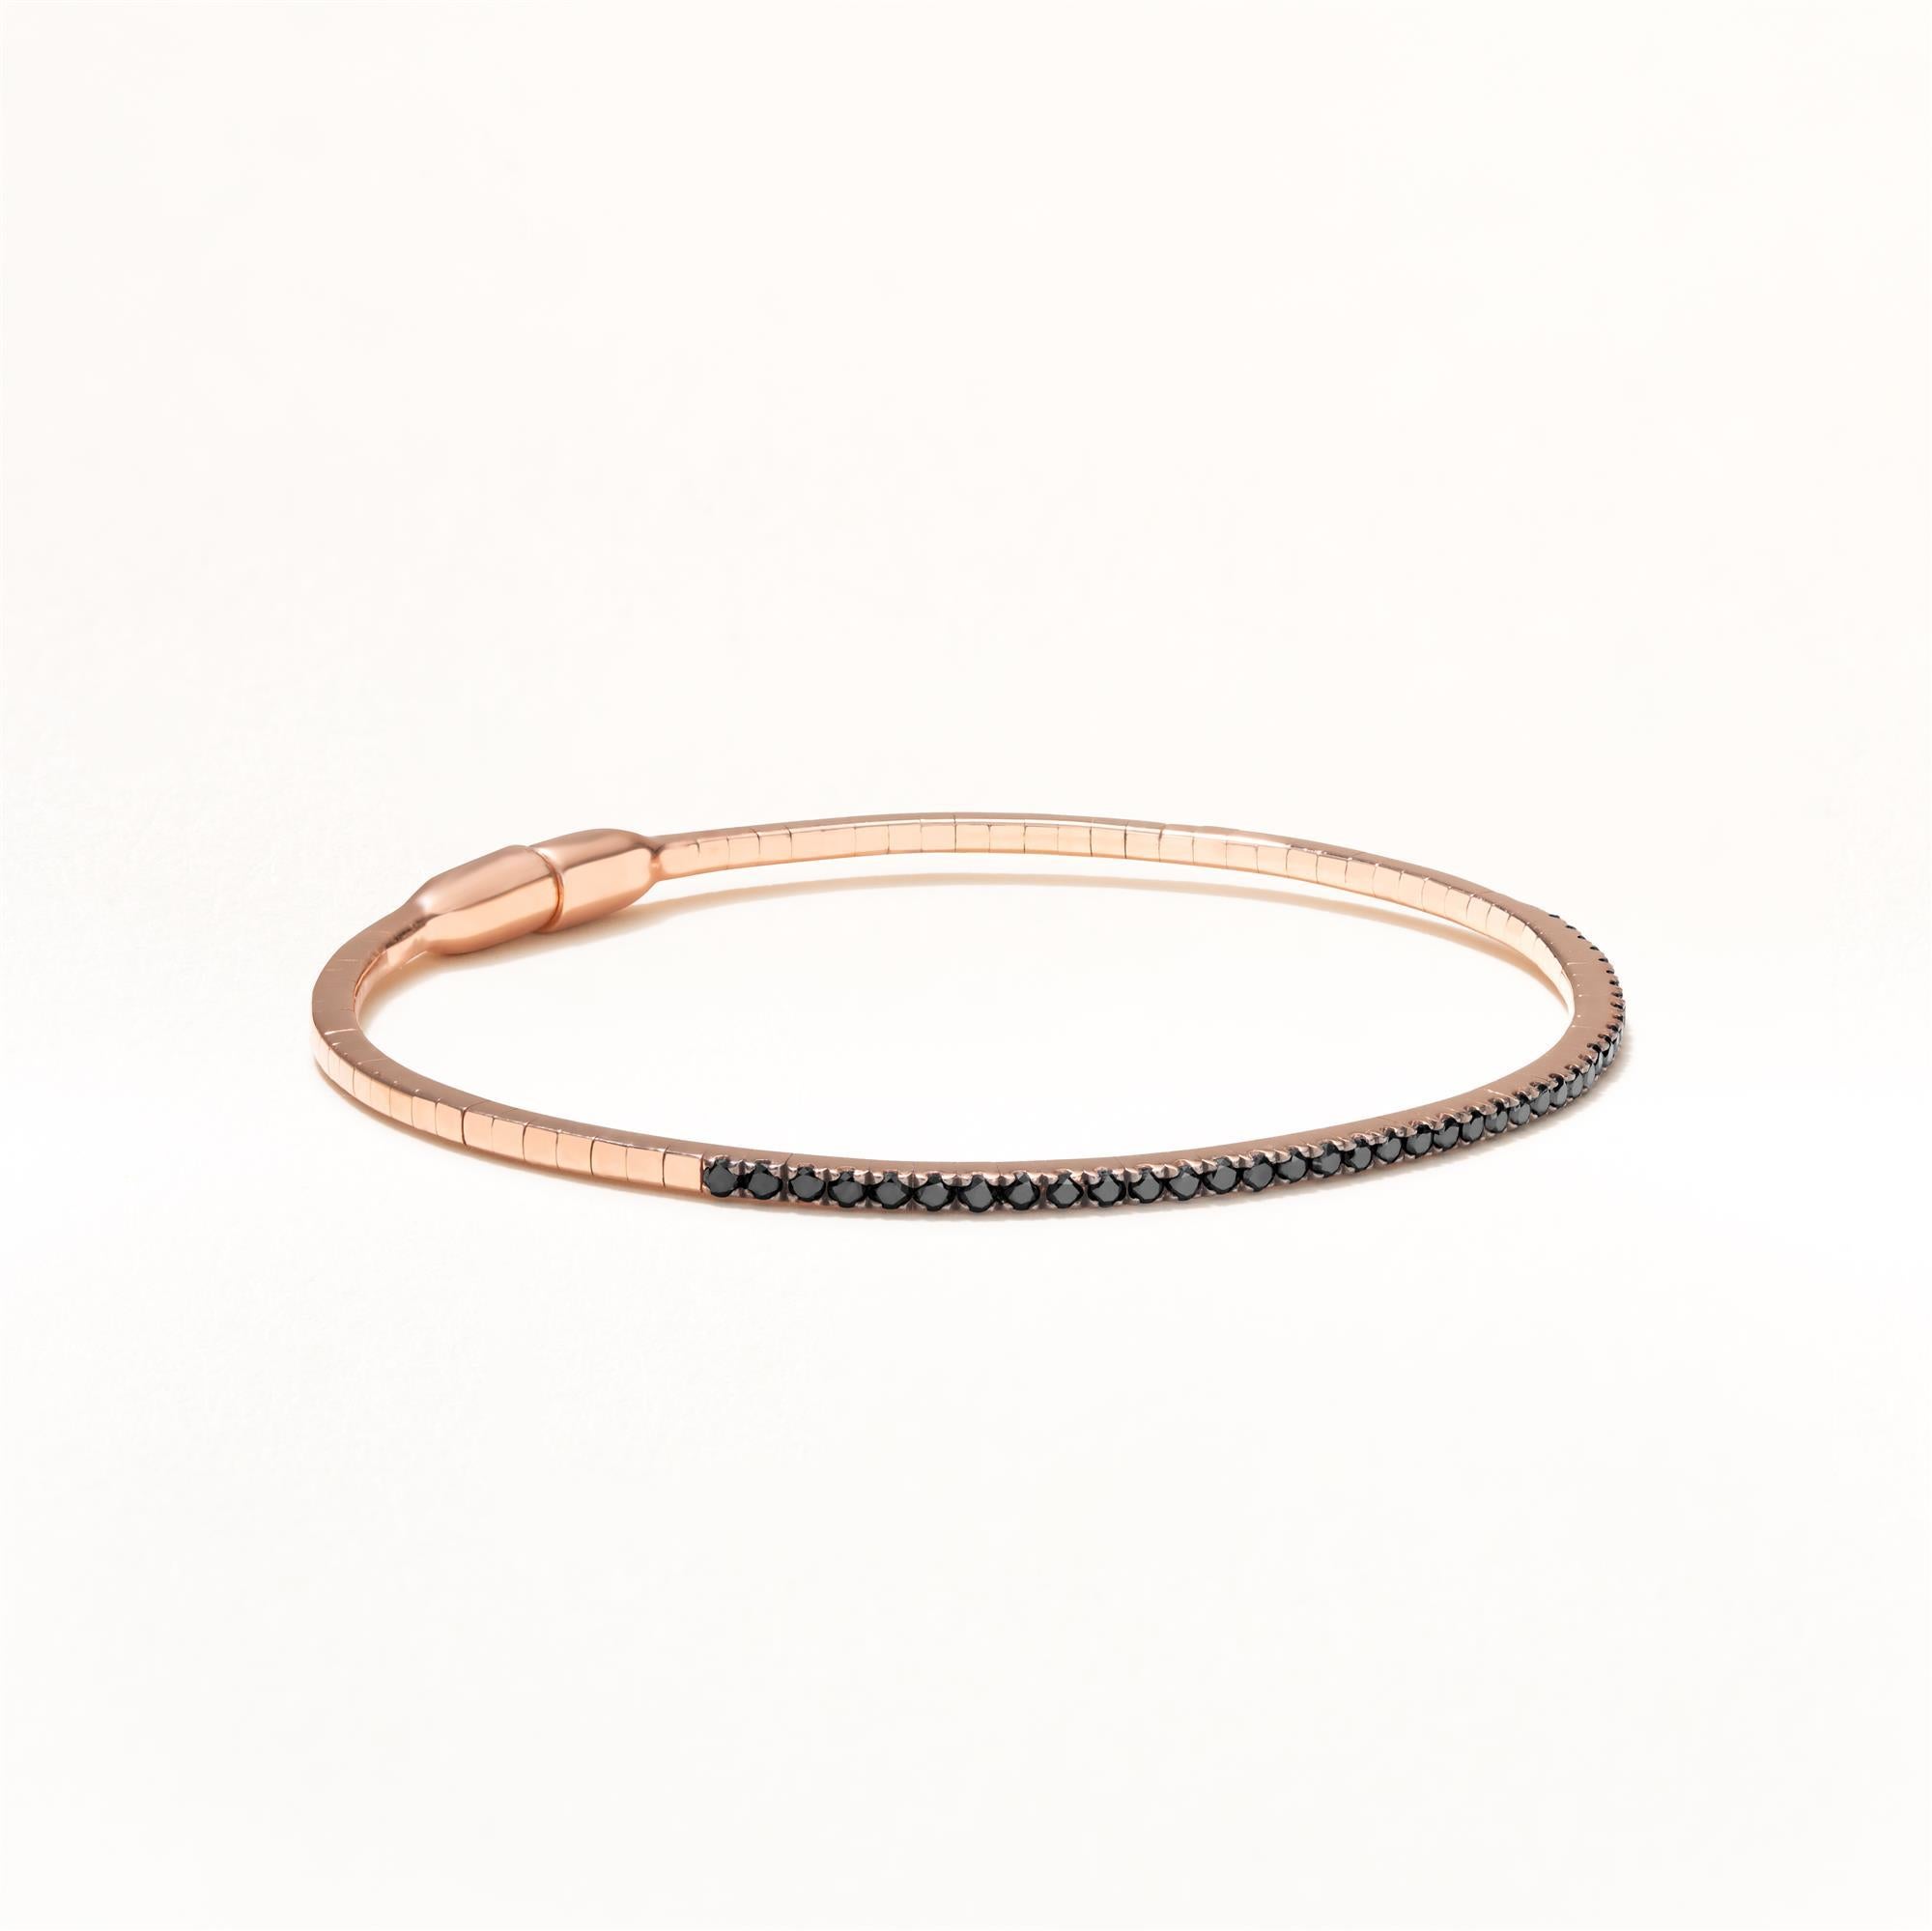 41 Diamants noirs ronds de pleine taille sont sertis dans un micro pavé sur ce bracelet Luxle en or rose 18 carats avec fermoir magnétique. Les diamants sont de couleur noire et pèsent 0,57 carat. Ornez ce magnifique bracelet qui fera tourner les